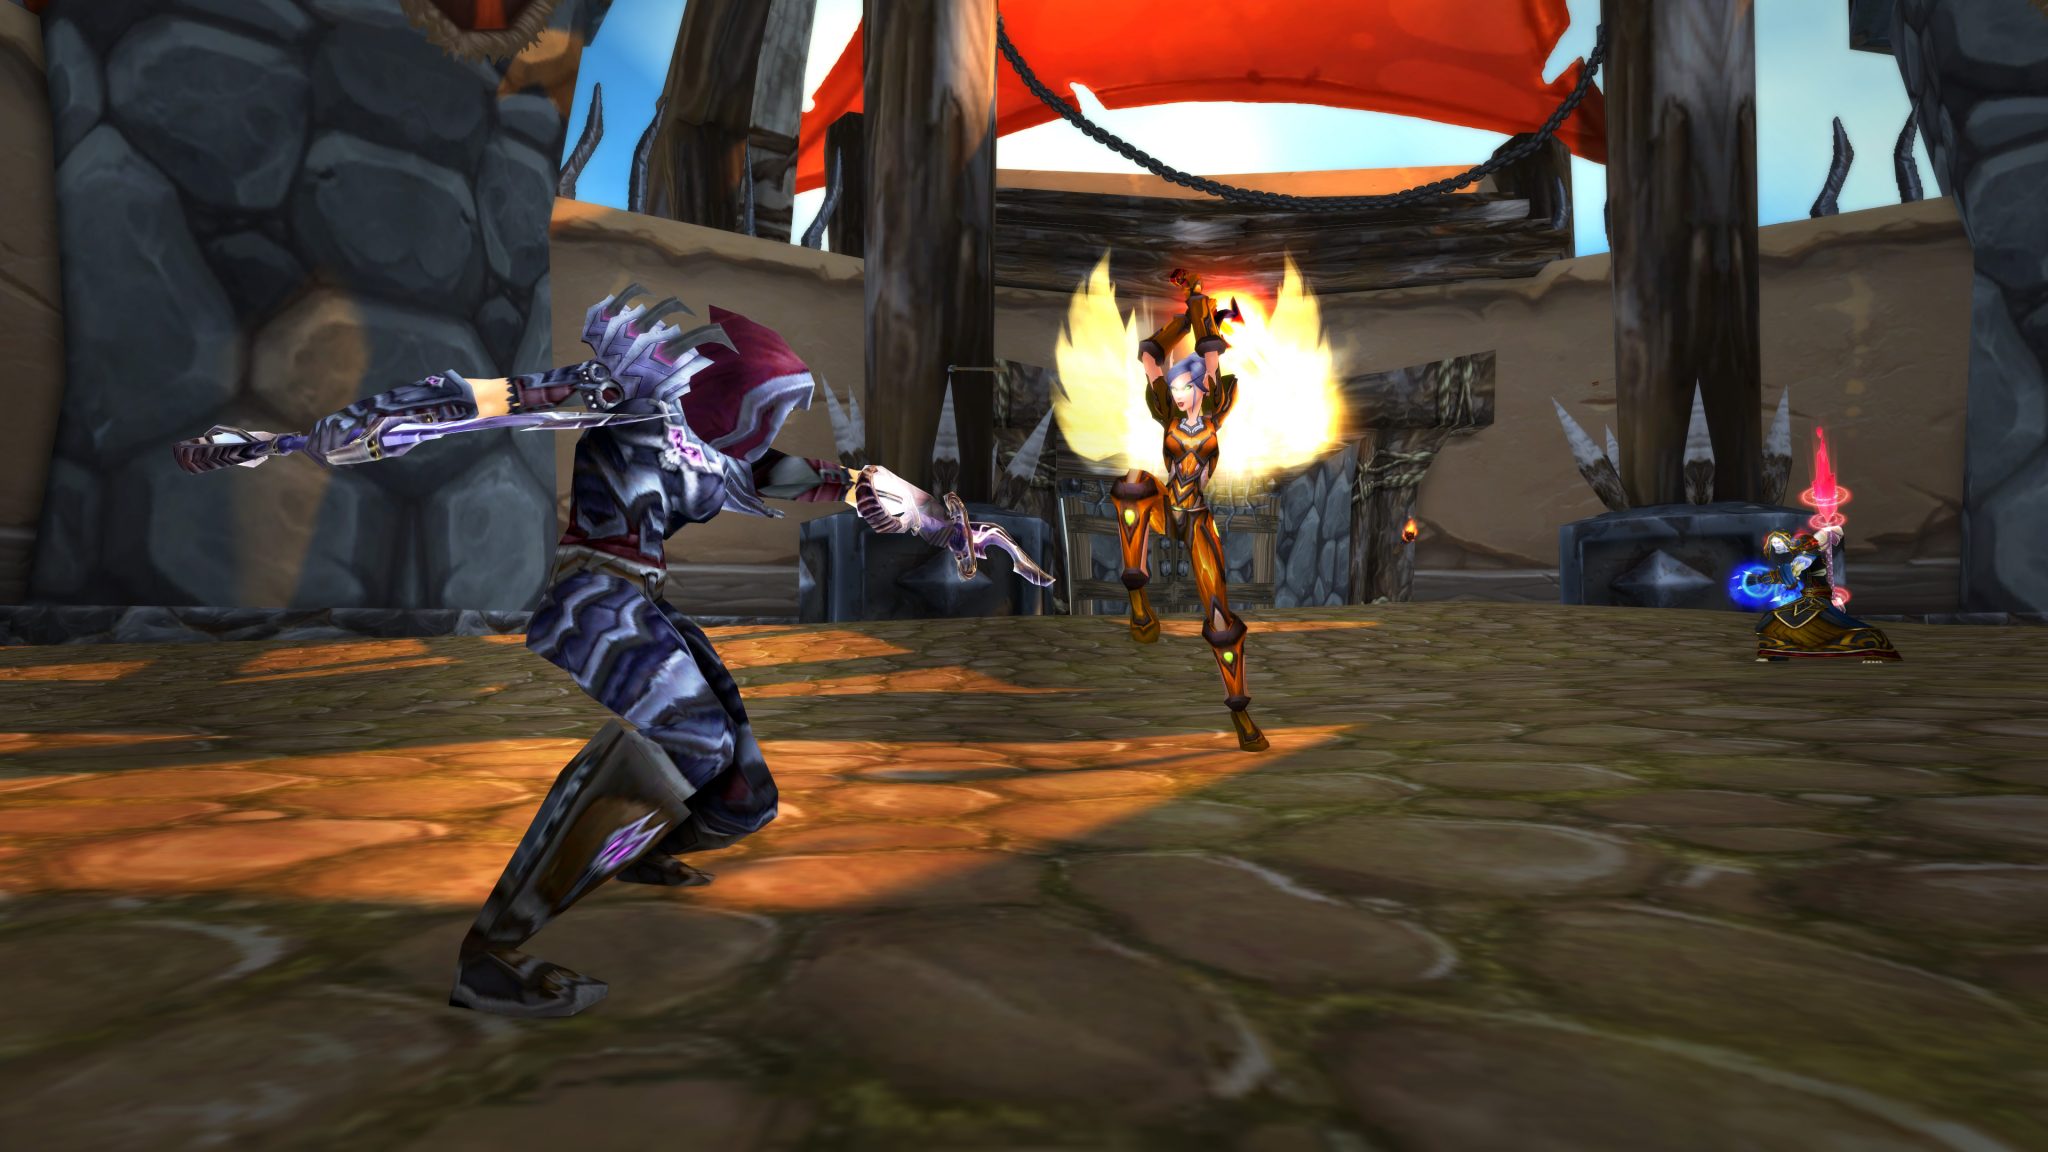 World of Warcraft-Charakter mit zwei Messern kämpft gegen einen anderen Charakter, der ein Schwert auf sie wirft